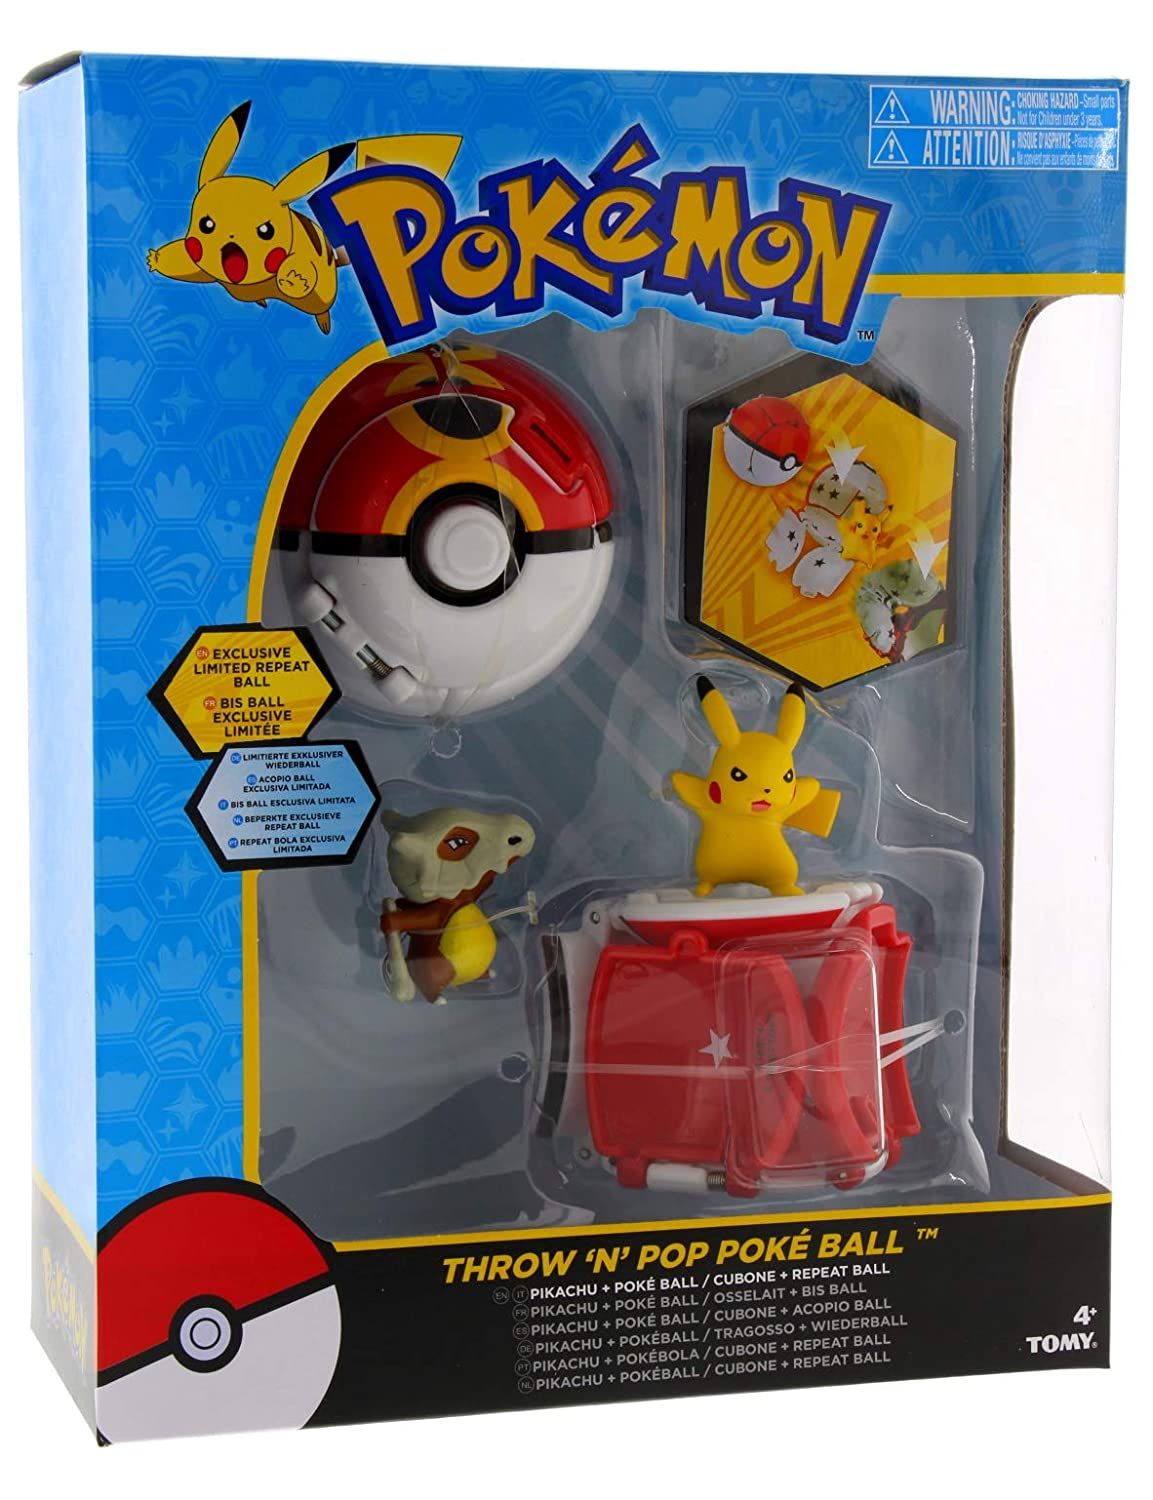 Tomy Pokemon Throw 'n Pop Duel Pikachu Pokeball é um dos melhores brinquedos Pokemon